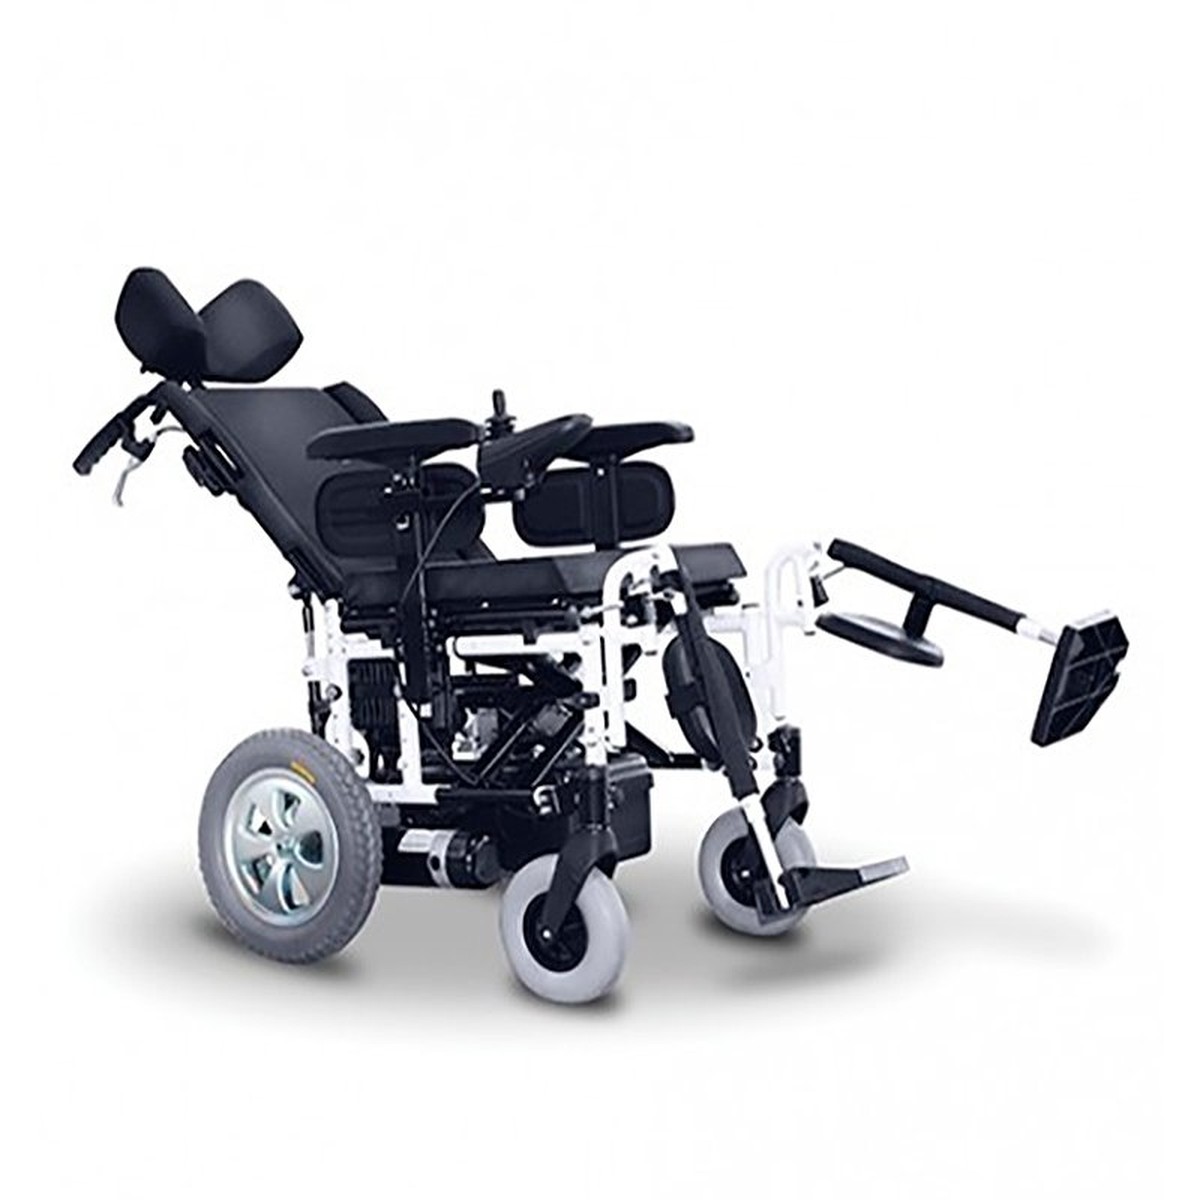 Exemplo de cadeira motorizada com joystick (Sem a adaptação do artigo)